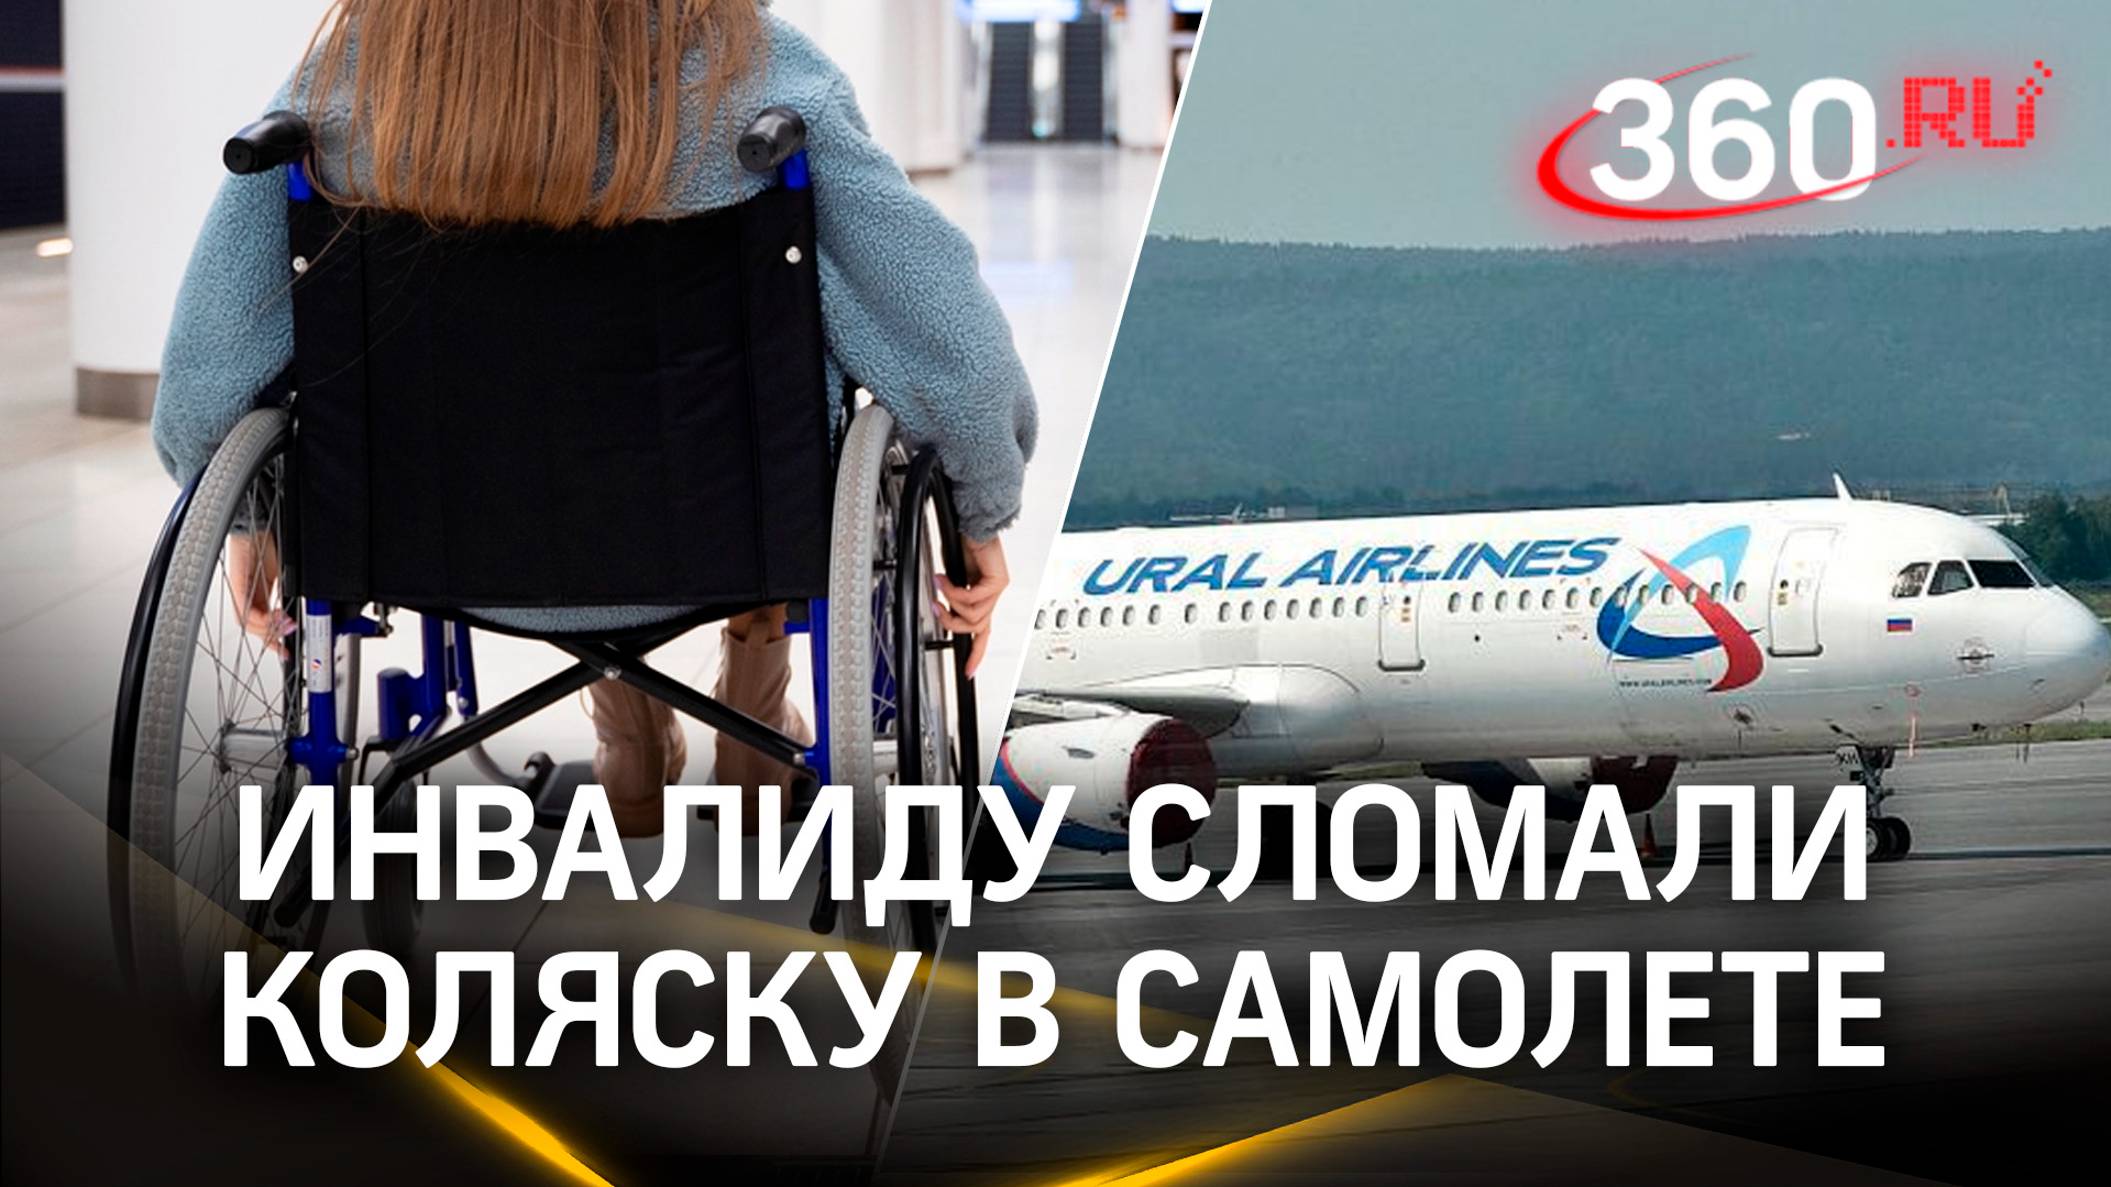 У пассажирки «Уральских авиалиний» оказалась сломана инвалидная коляска